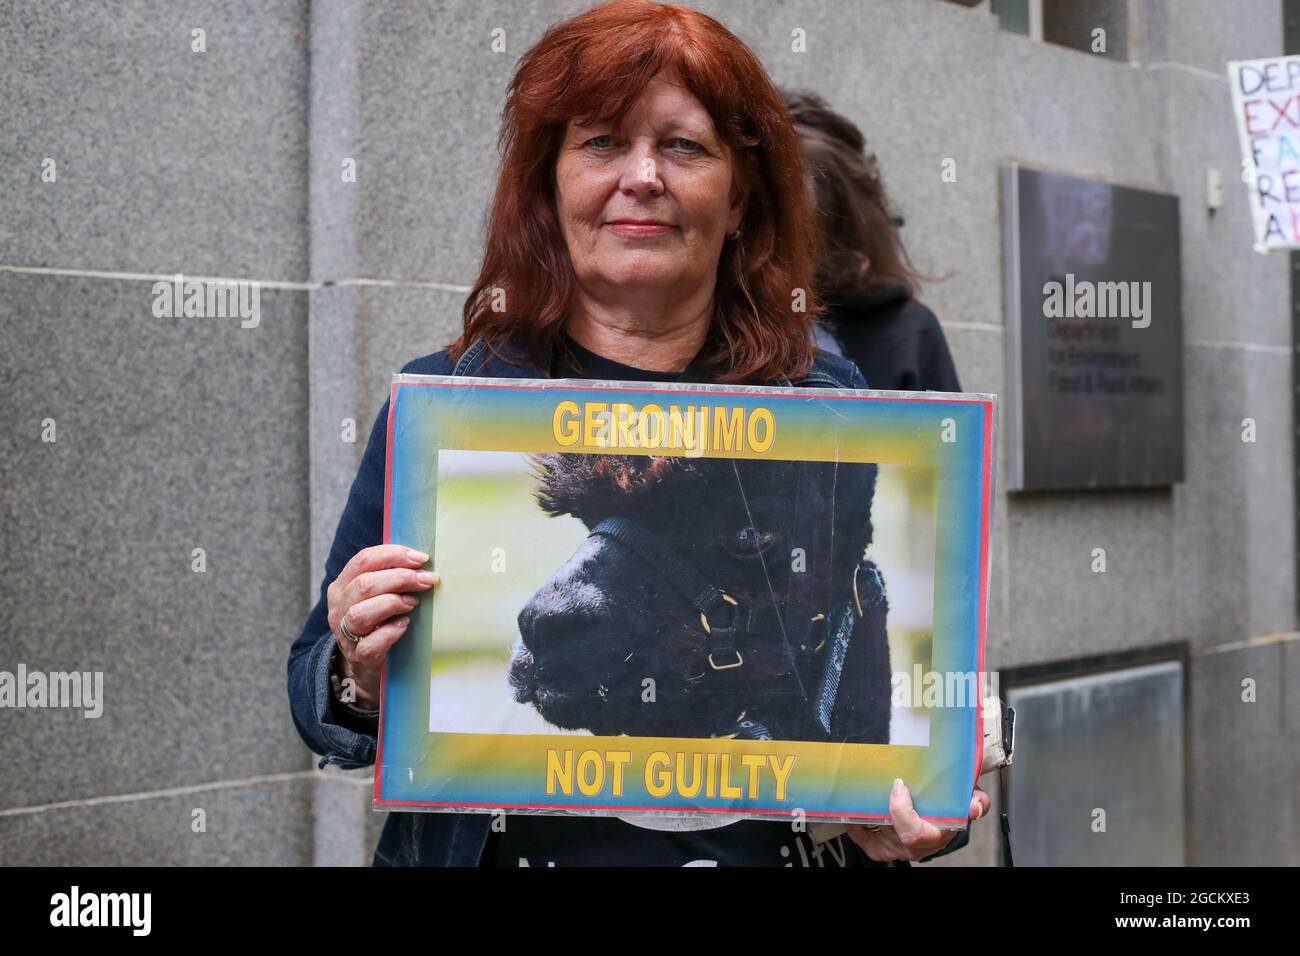 LONDRA, INGHILTERRA - 9 AGOSTO 2021, protesta contro Save Geronimo The Alpaca per essere stato estirpato al di fuori del Dipartimento di ambiente, cibo e affari rurali, a Londra Foto Stock